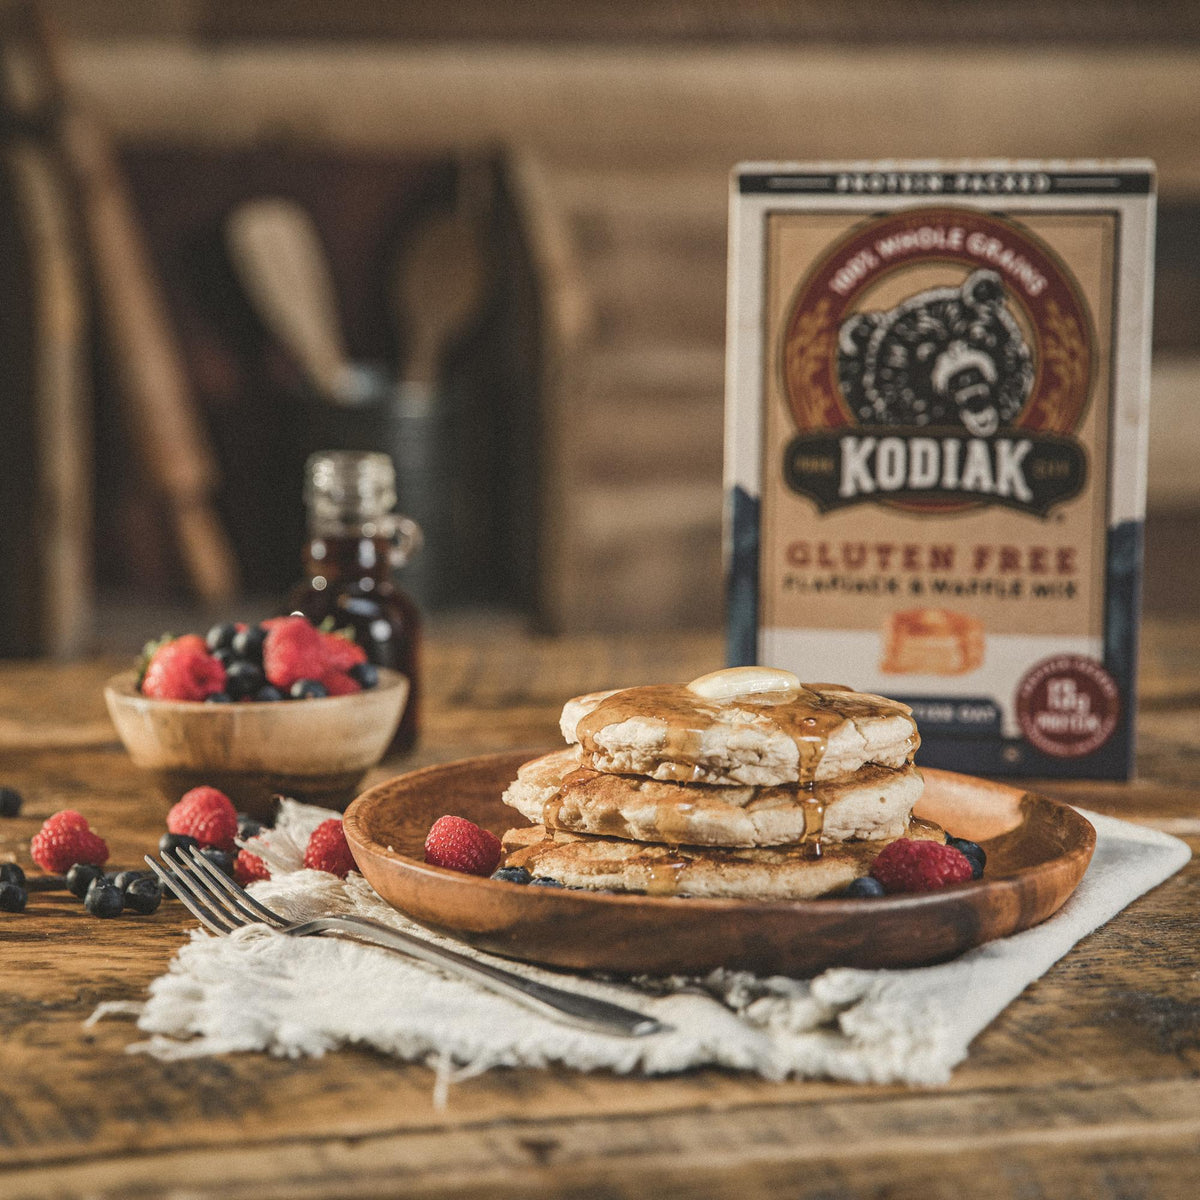 Kodiak Cakes Plant-Based Pancake & Waffle Mix Review